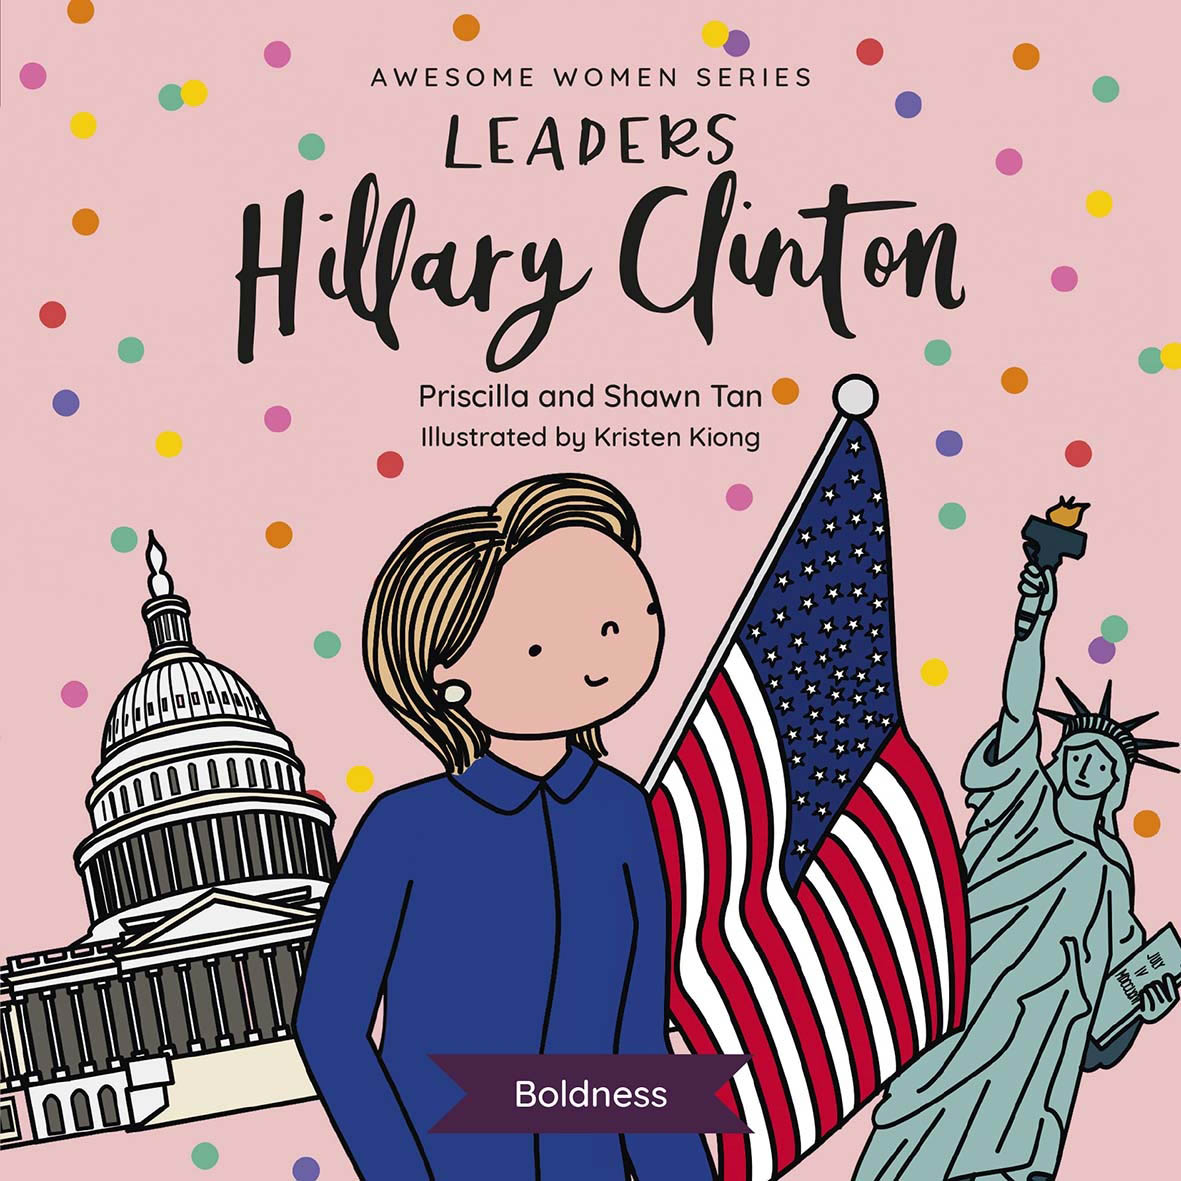 Leaders : Hillary Clinton